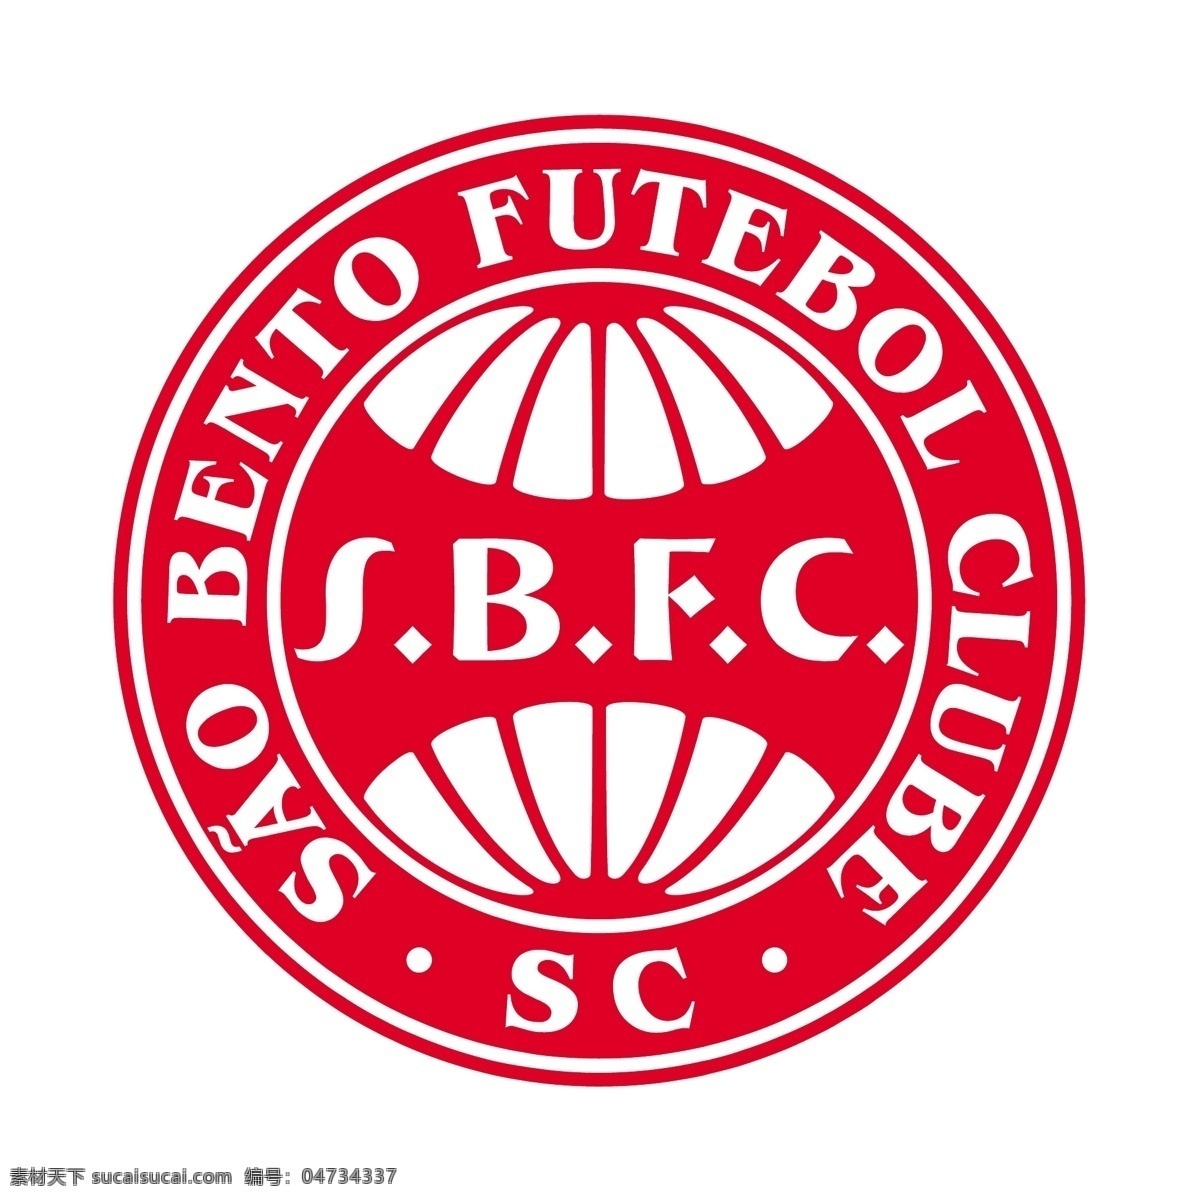 圣保罗 盒饭 足球 俱乐部 sc 免费 骚 便当 标志 psd源文件 logo设计